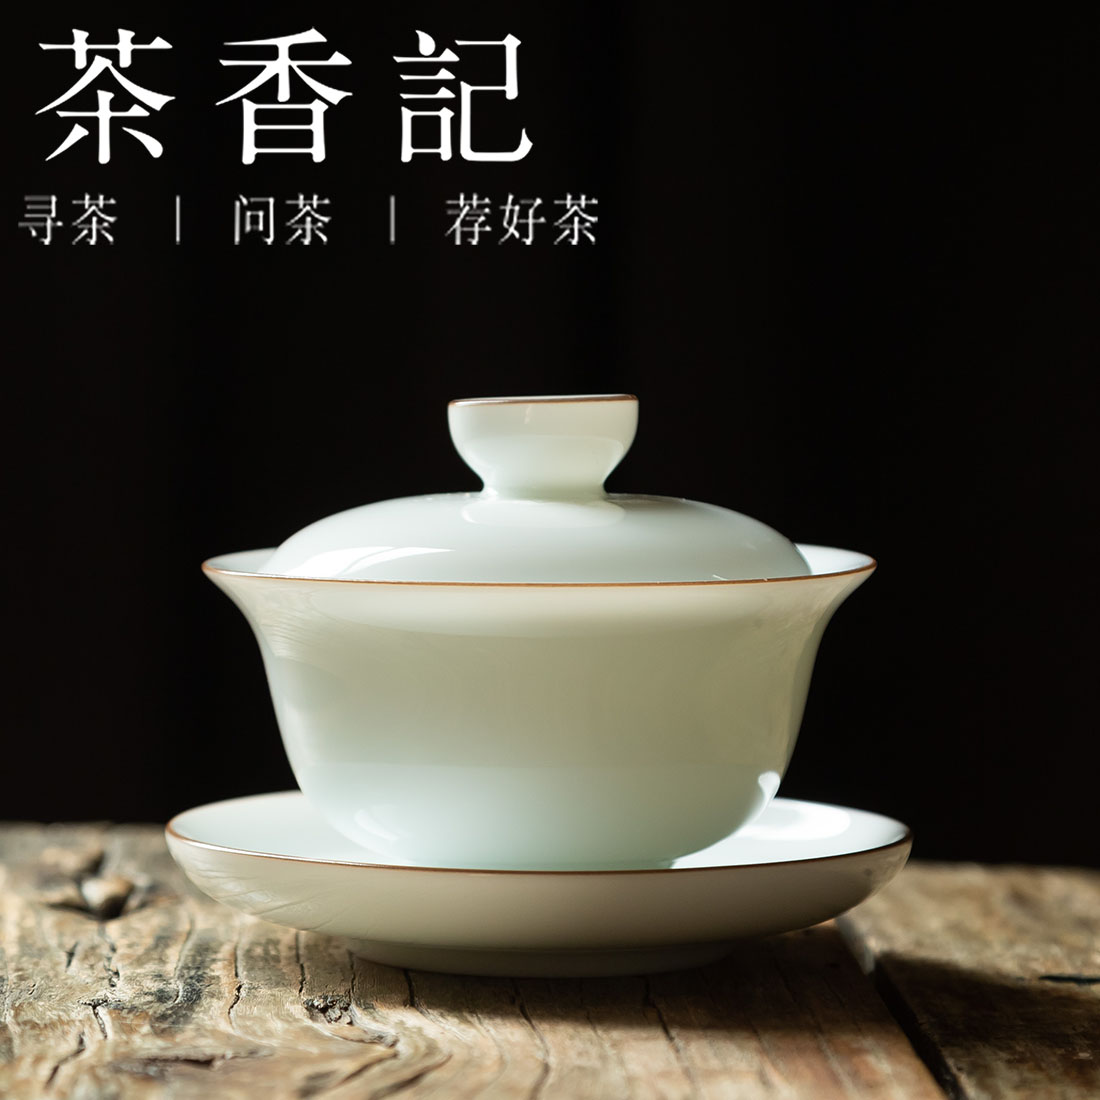 茶香记 紫金口甜白盖碗 素雅 甜润 细腻 高性价比 茶道工具